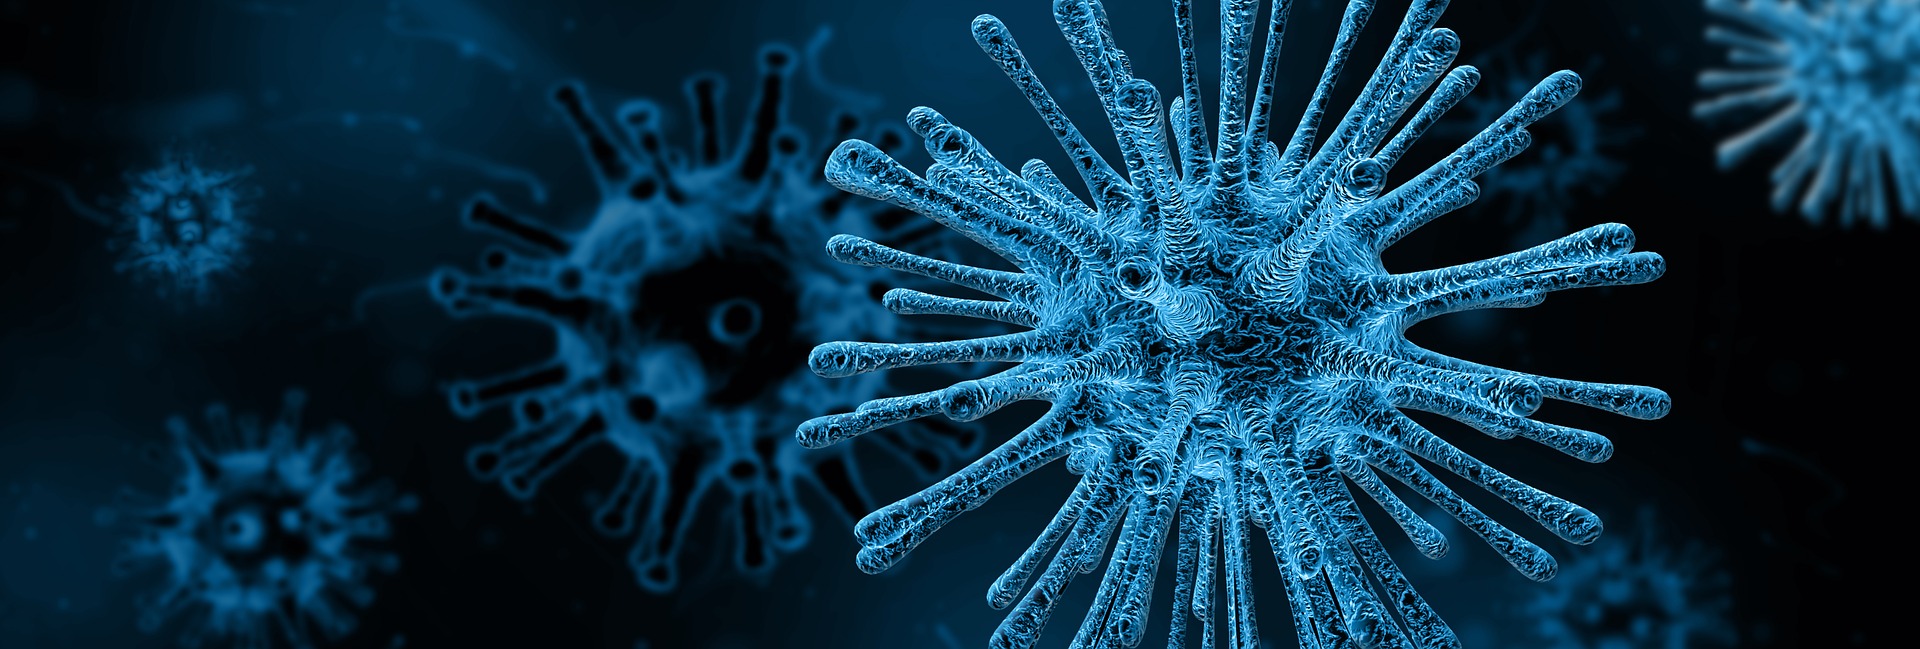 Virologie : 7 coronavirus humains HCoV rapportés à ce jour.